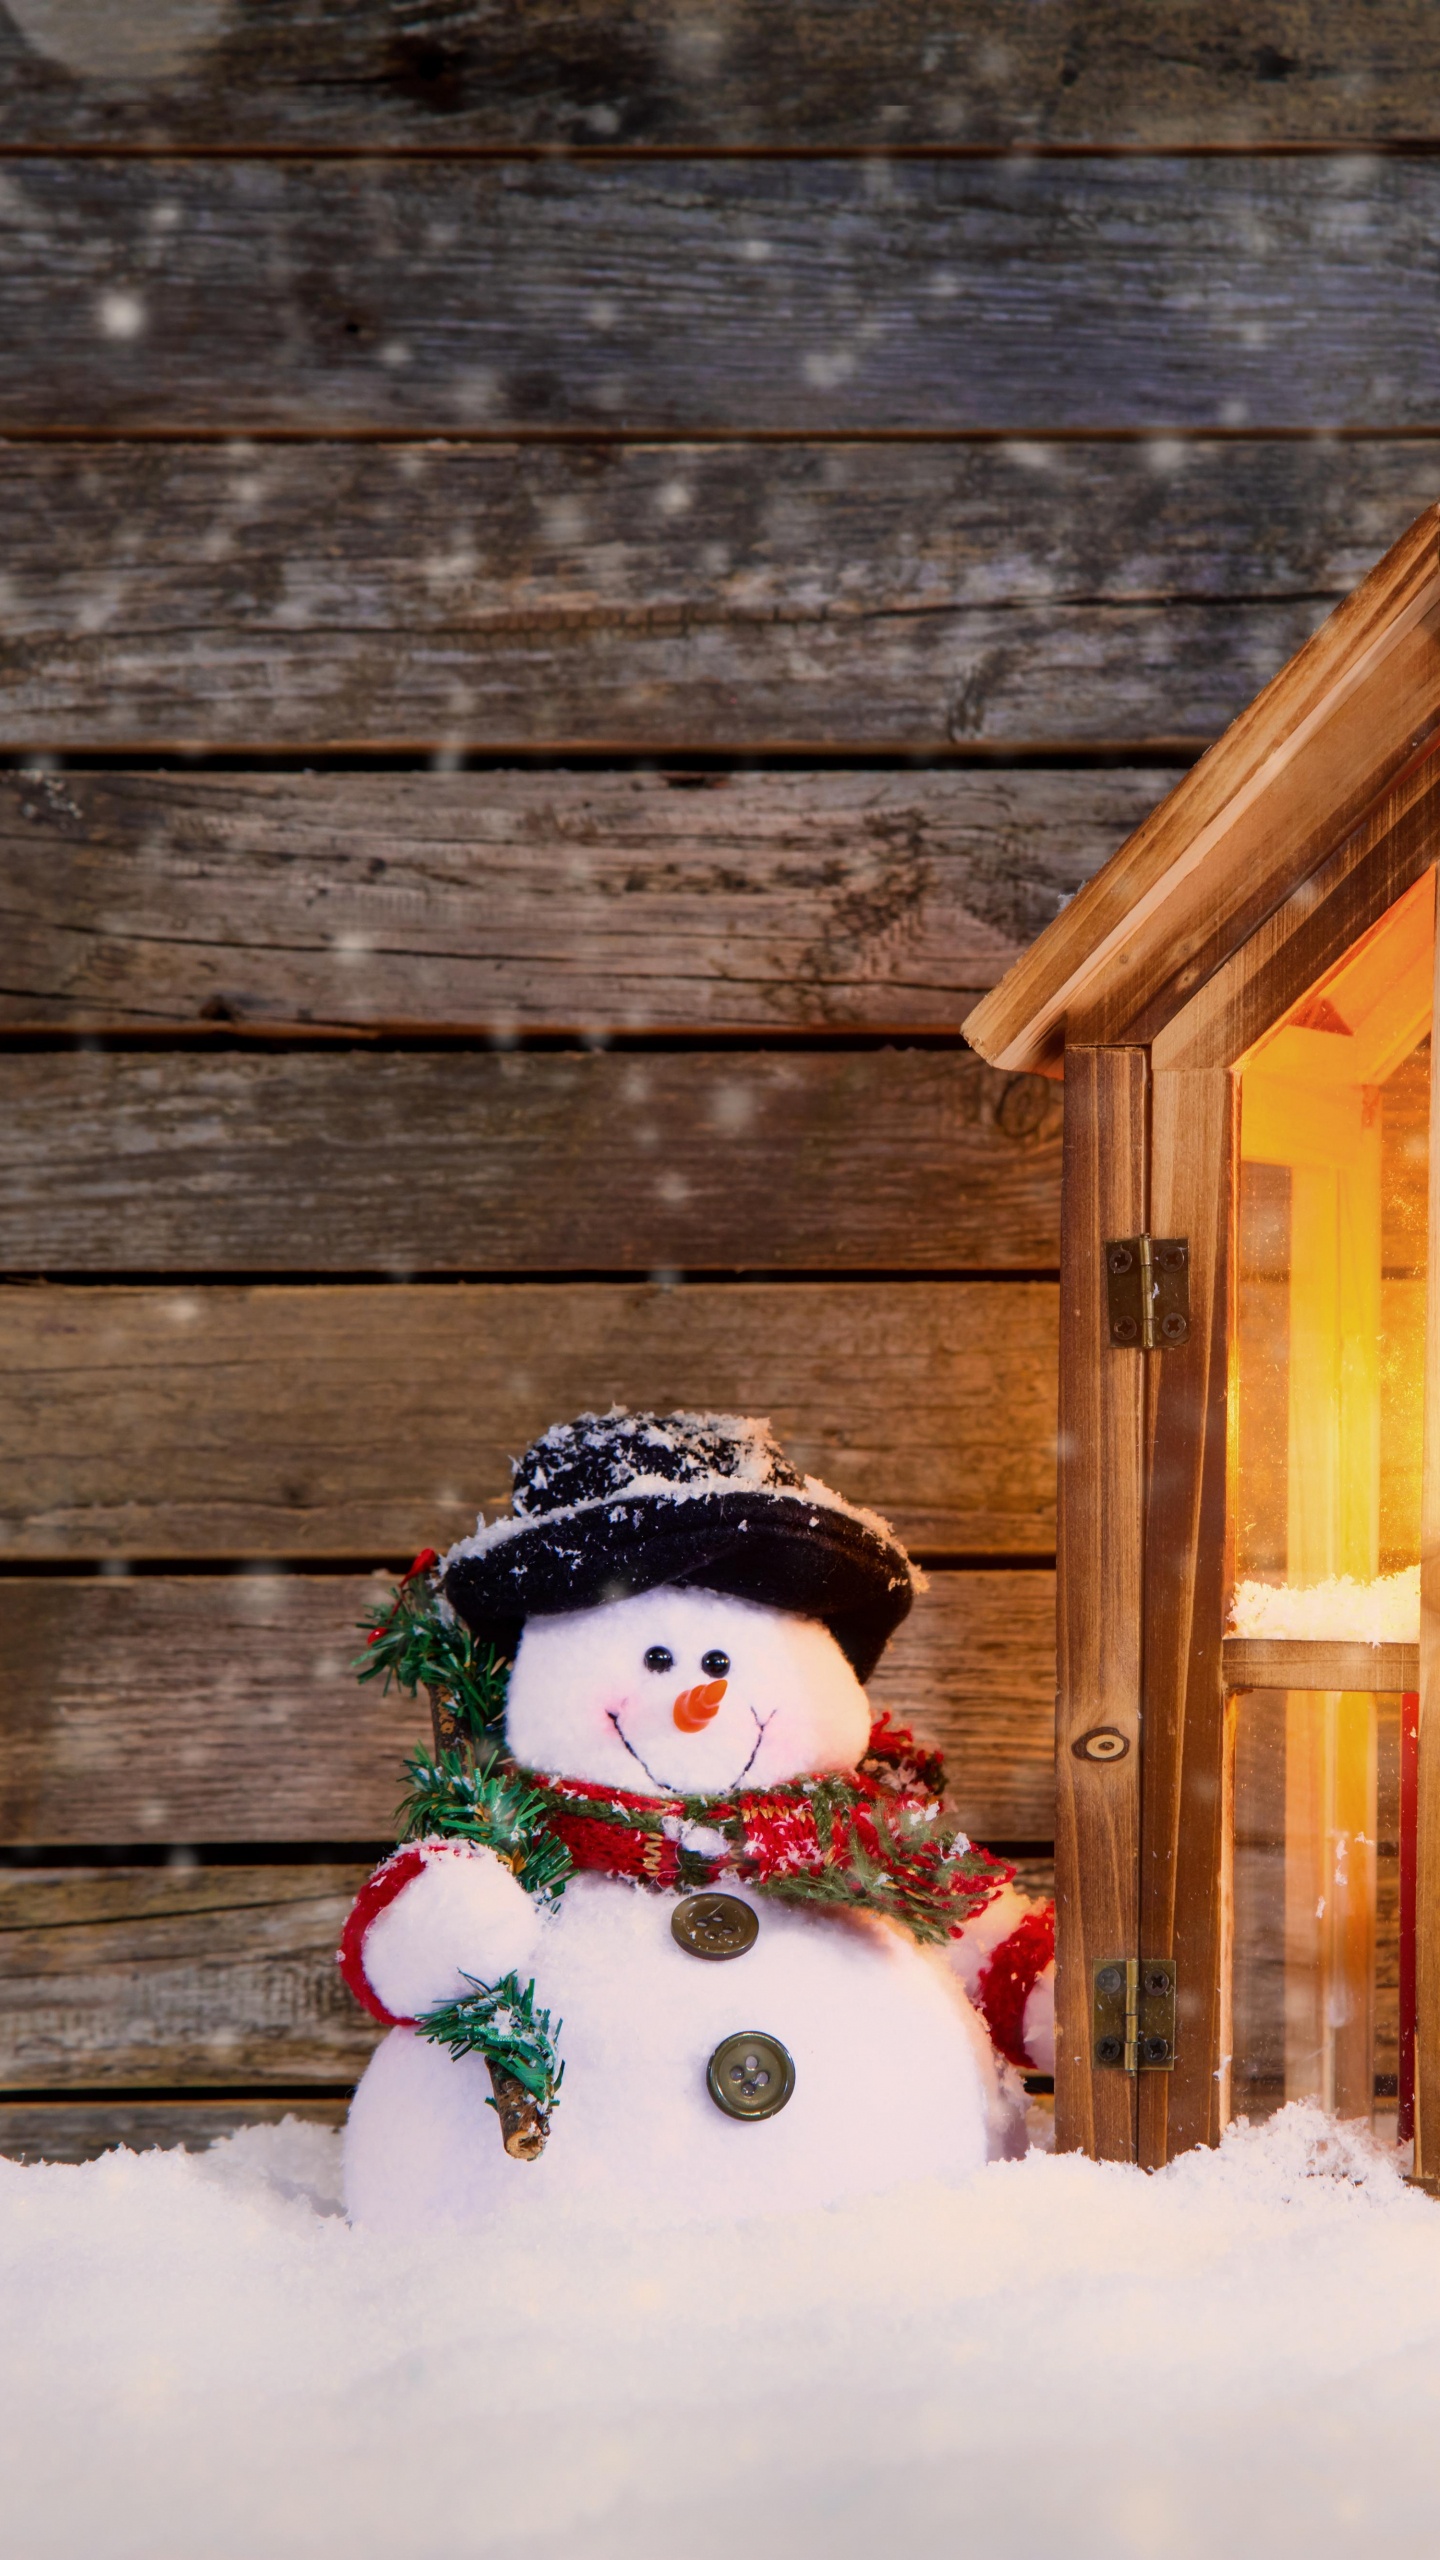 圣诞节那天, 雪人, 圣诞装饰, 圣诞节的装饰品, 冬天 壁纸 1440x2560 允许